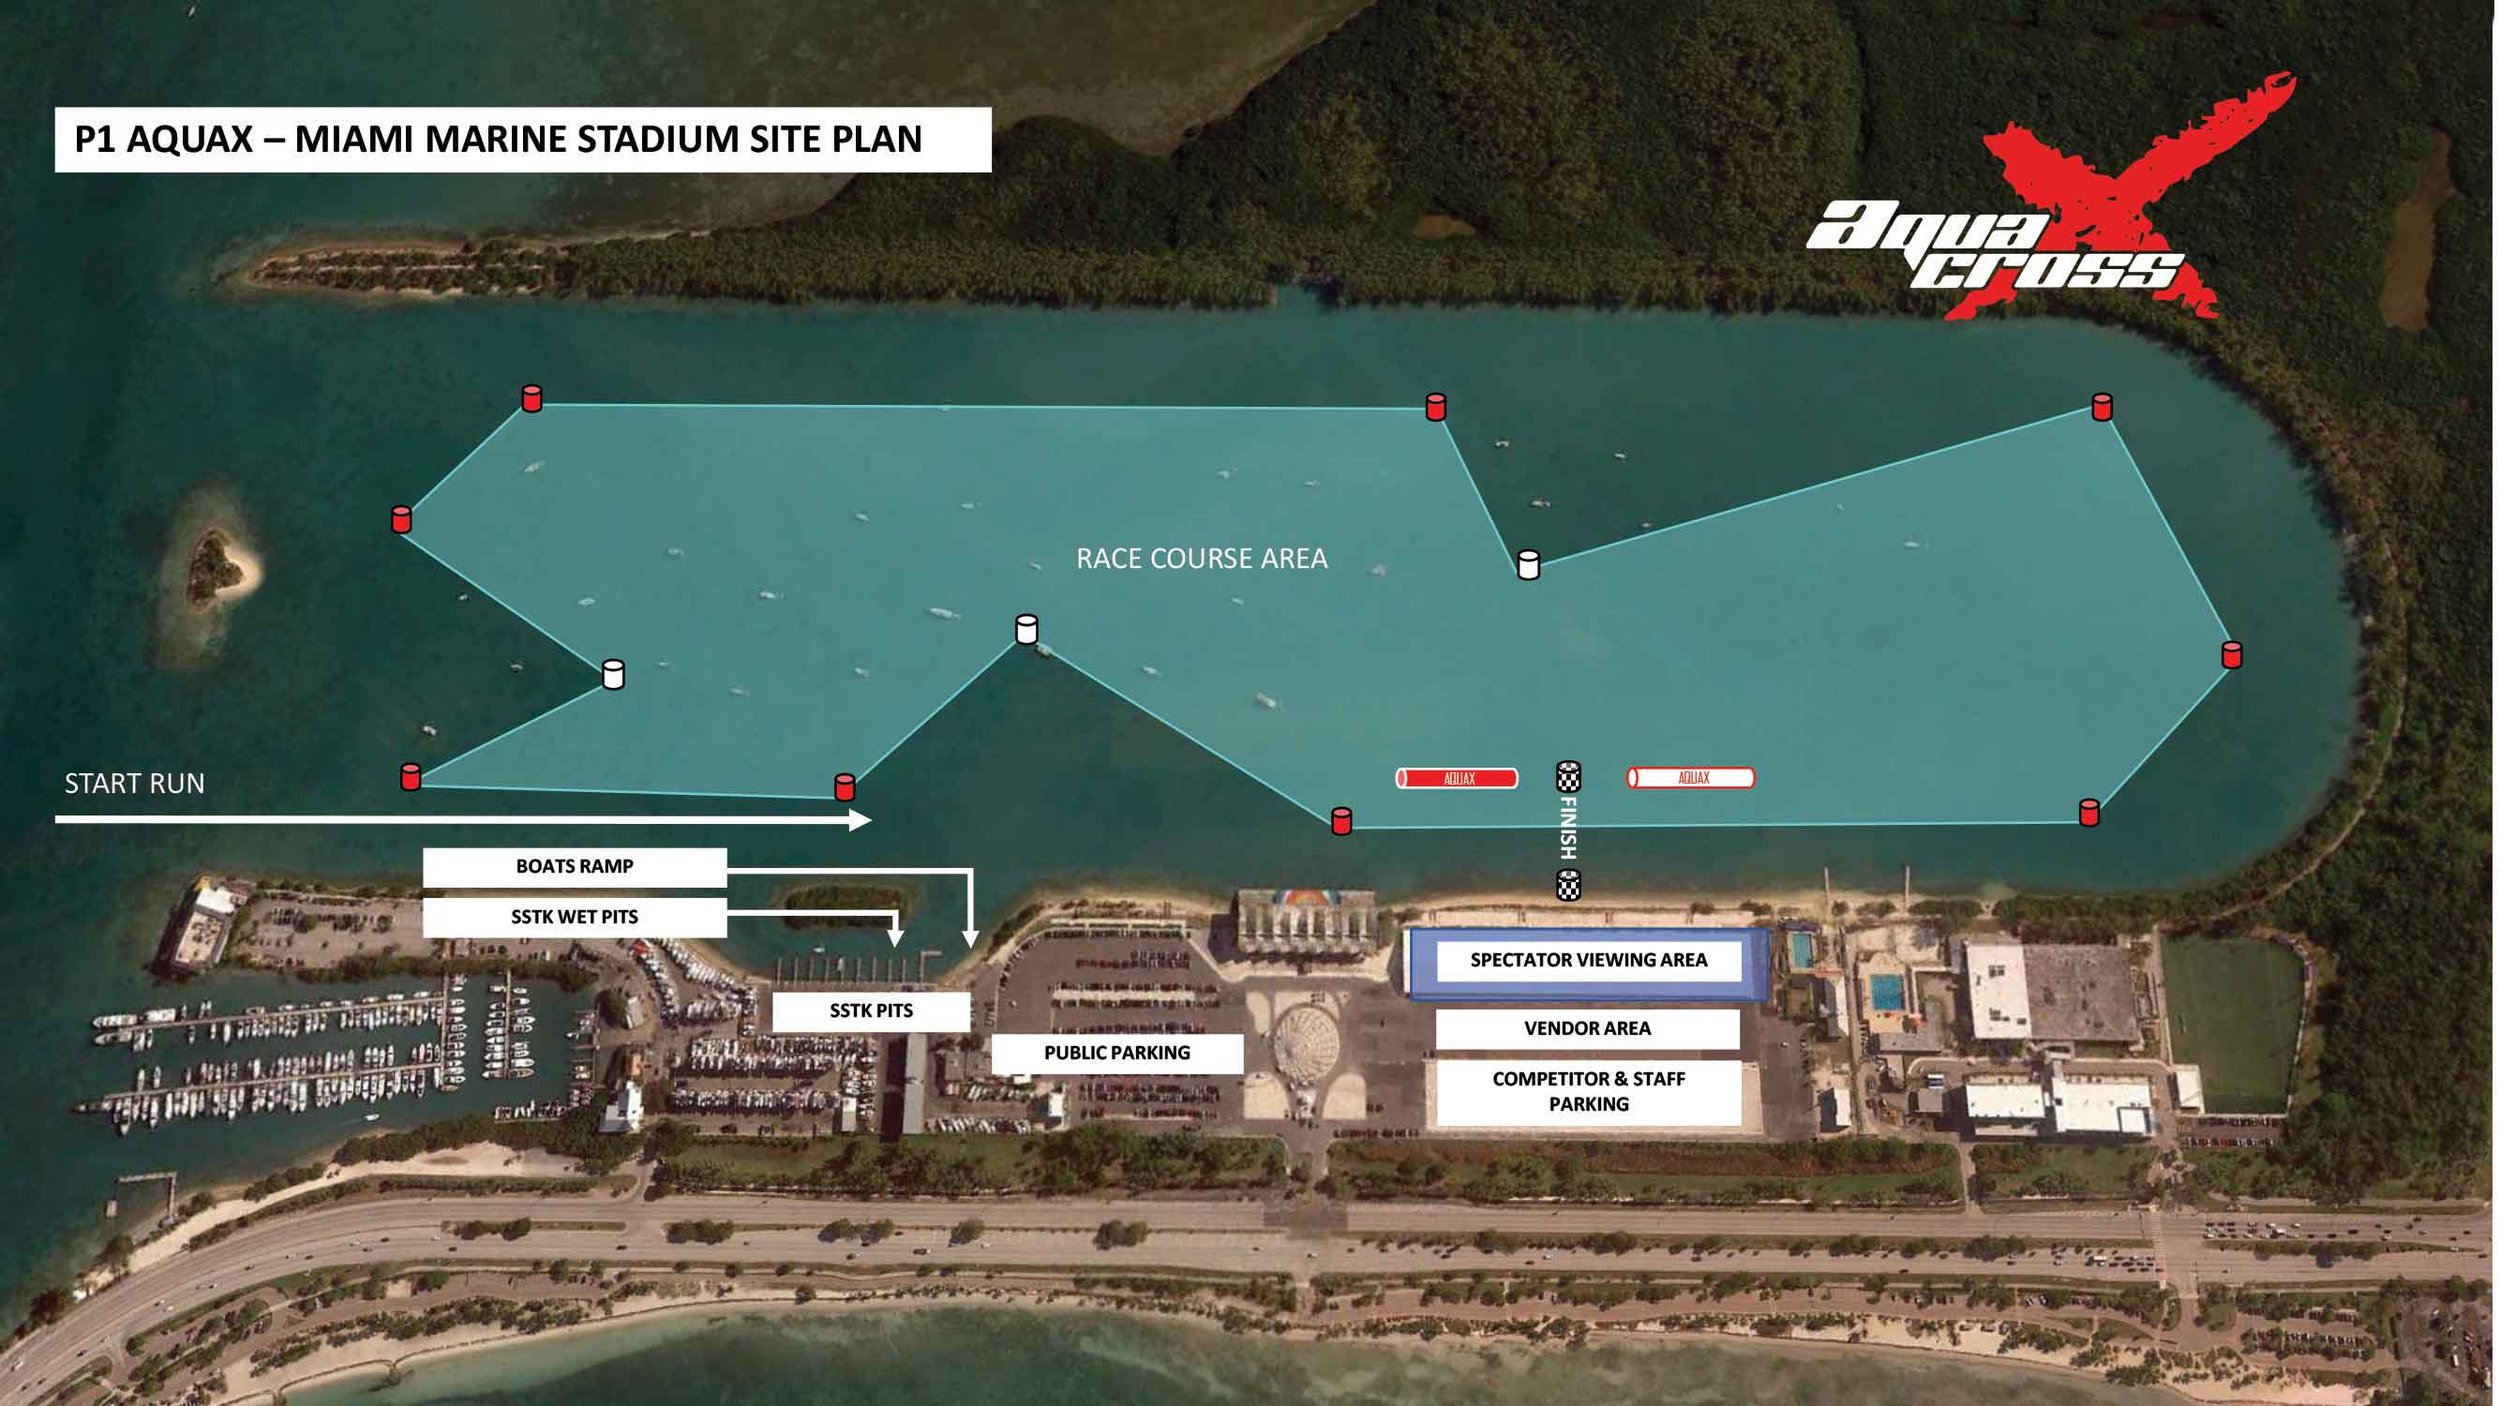 6_Miami-marine-stadium-site-plan.jpg